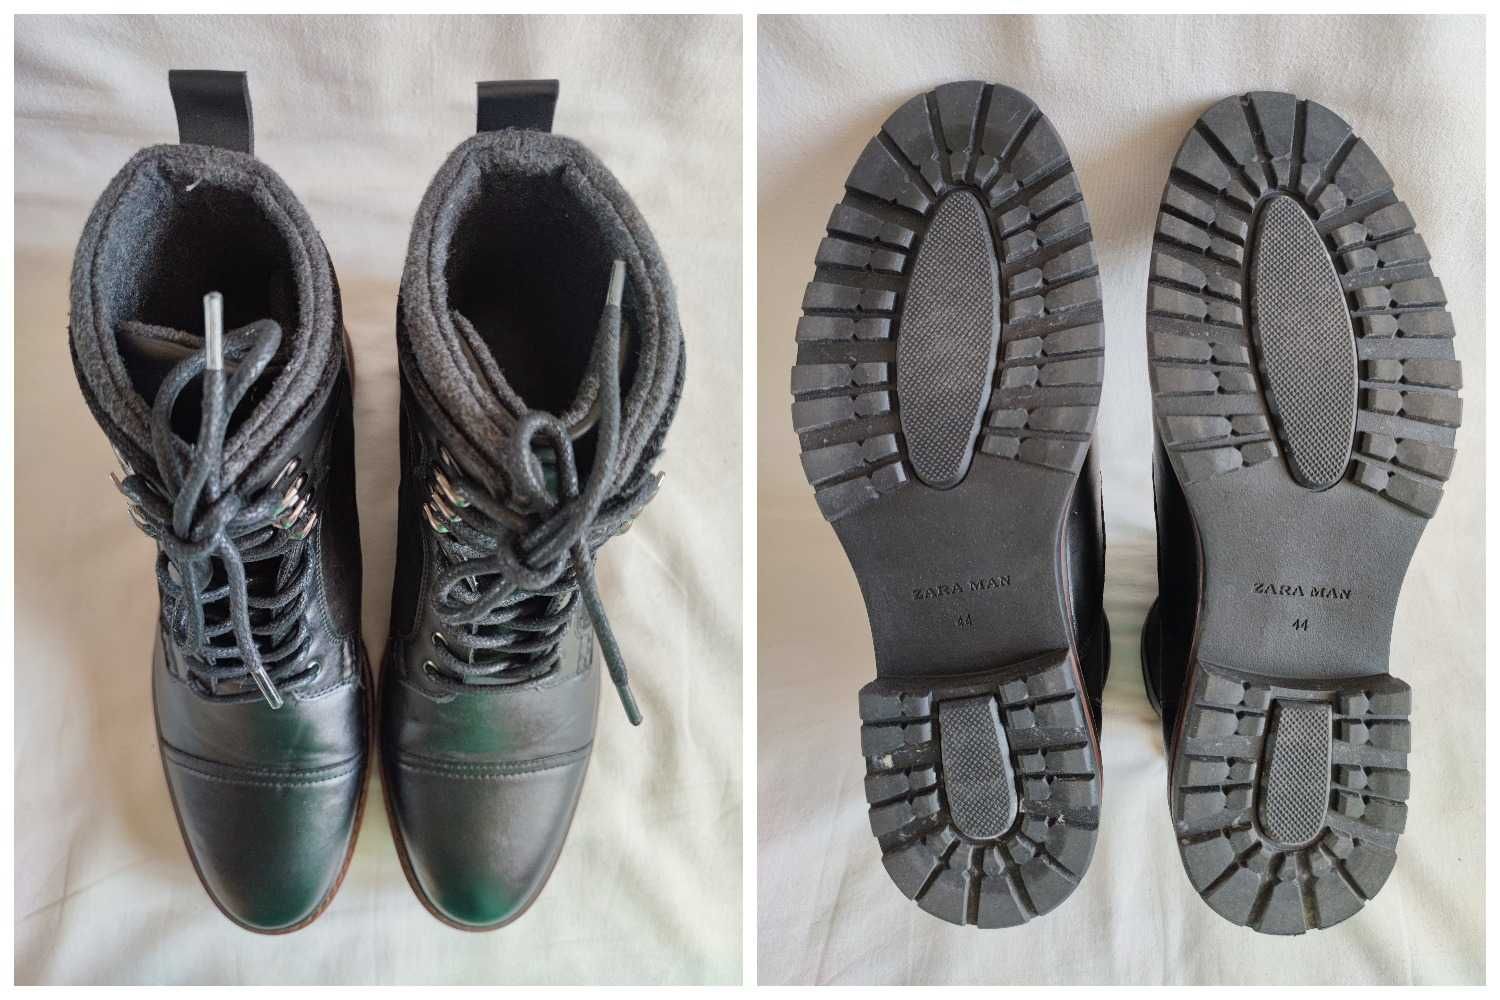 Ботинки кожаные мужские "Zara Man" Размер EUR-44,5 (29,5 см).Идеальные